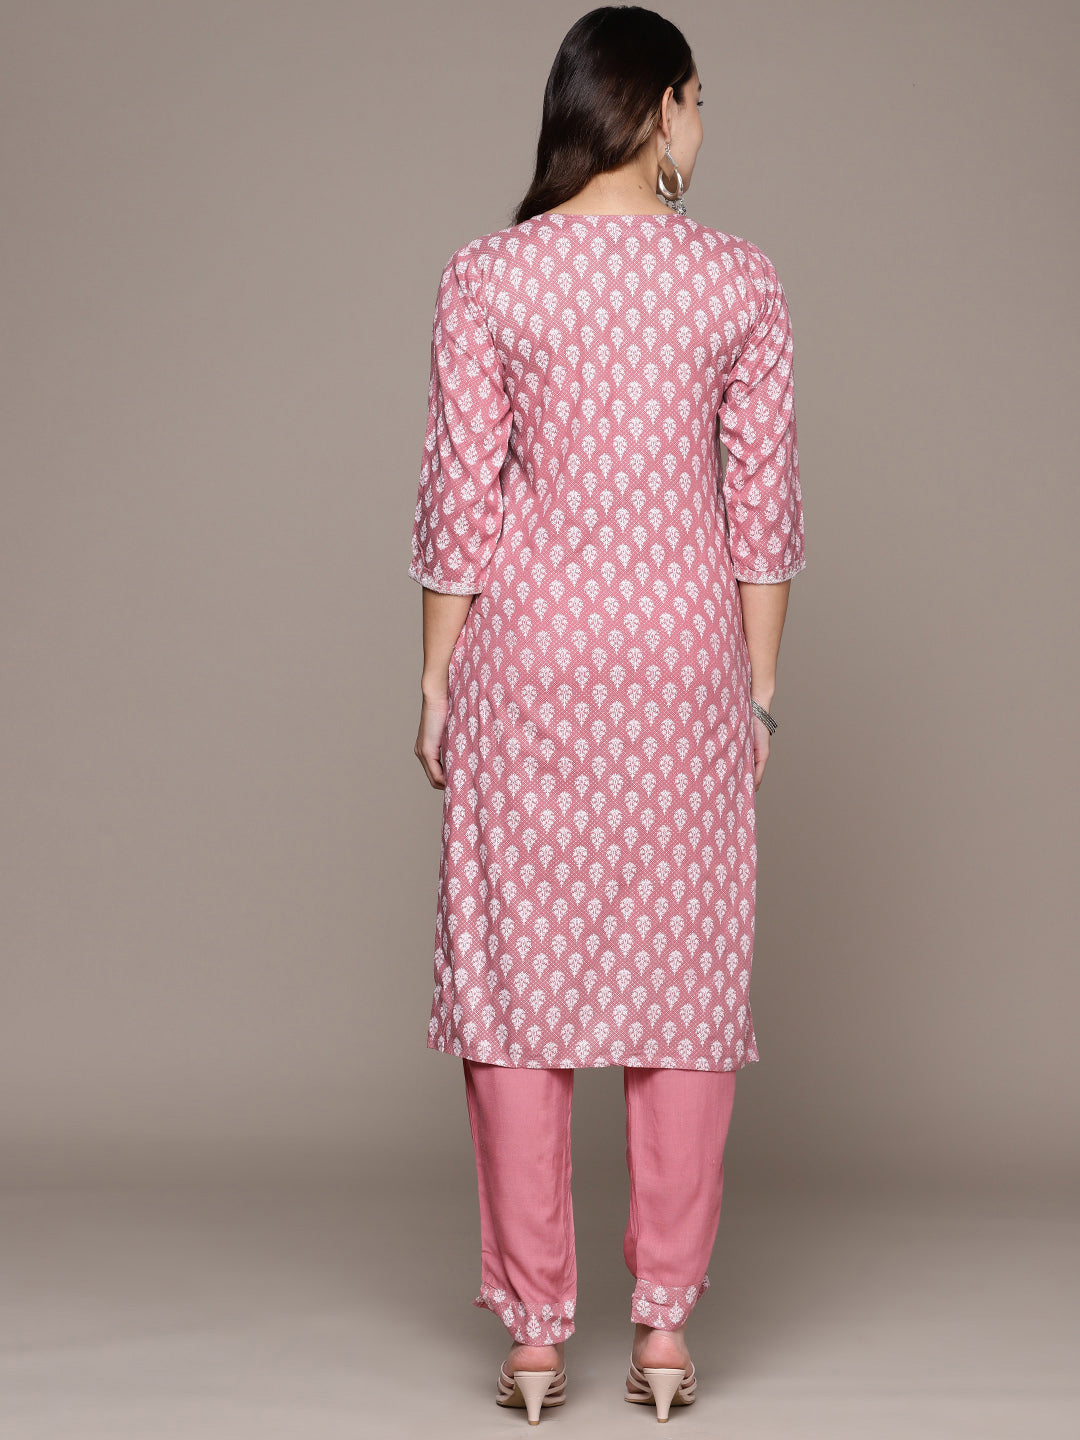 Women's Pink Color Cotton Straight Kurta And Palazzo Set - Ziyaa